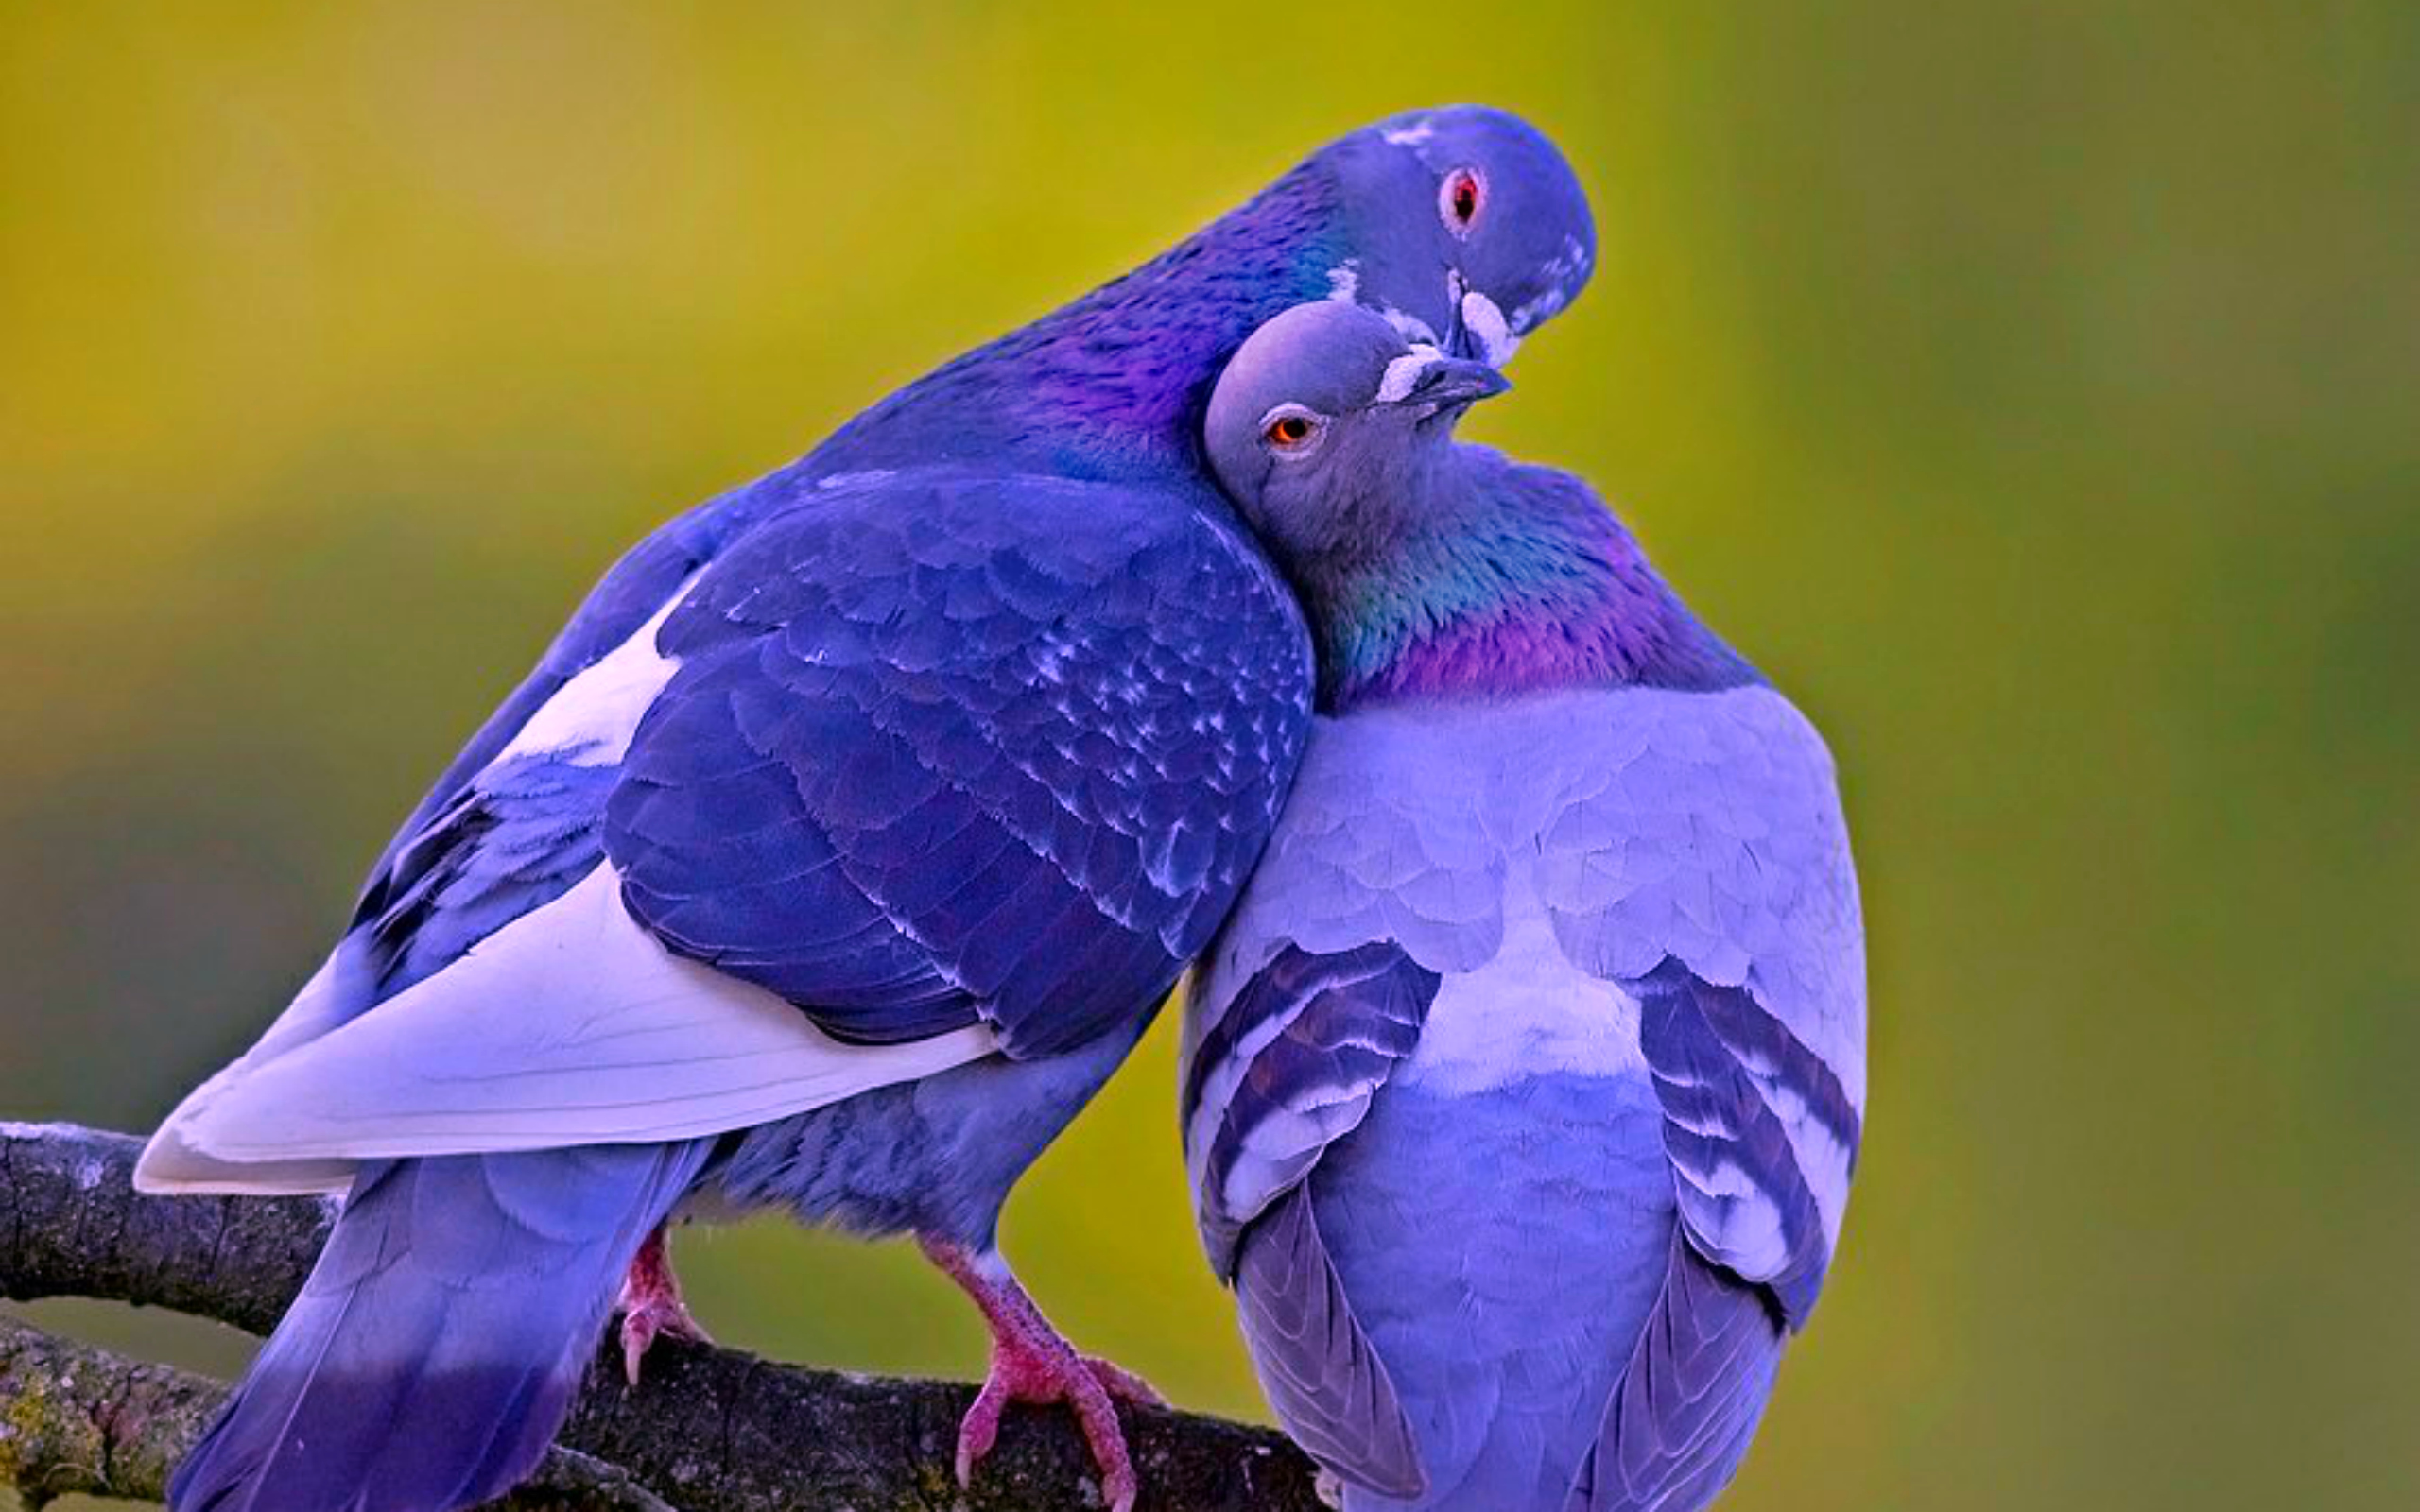 Love Birds Images Download - 2560x1600 Wallpaper 